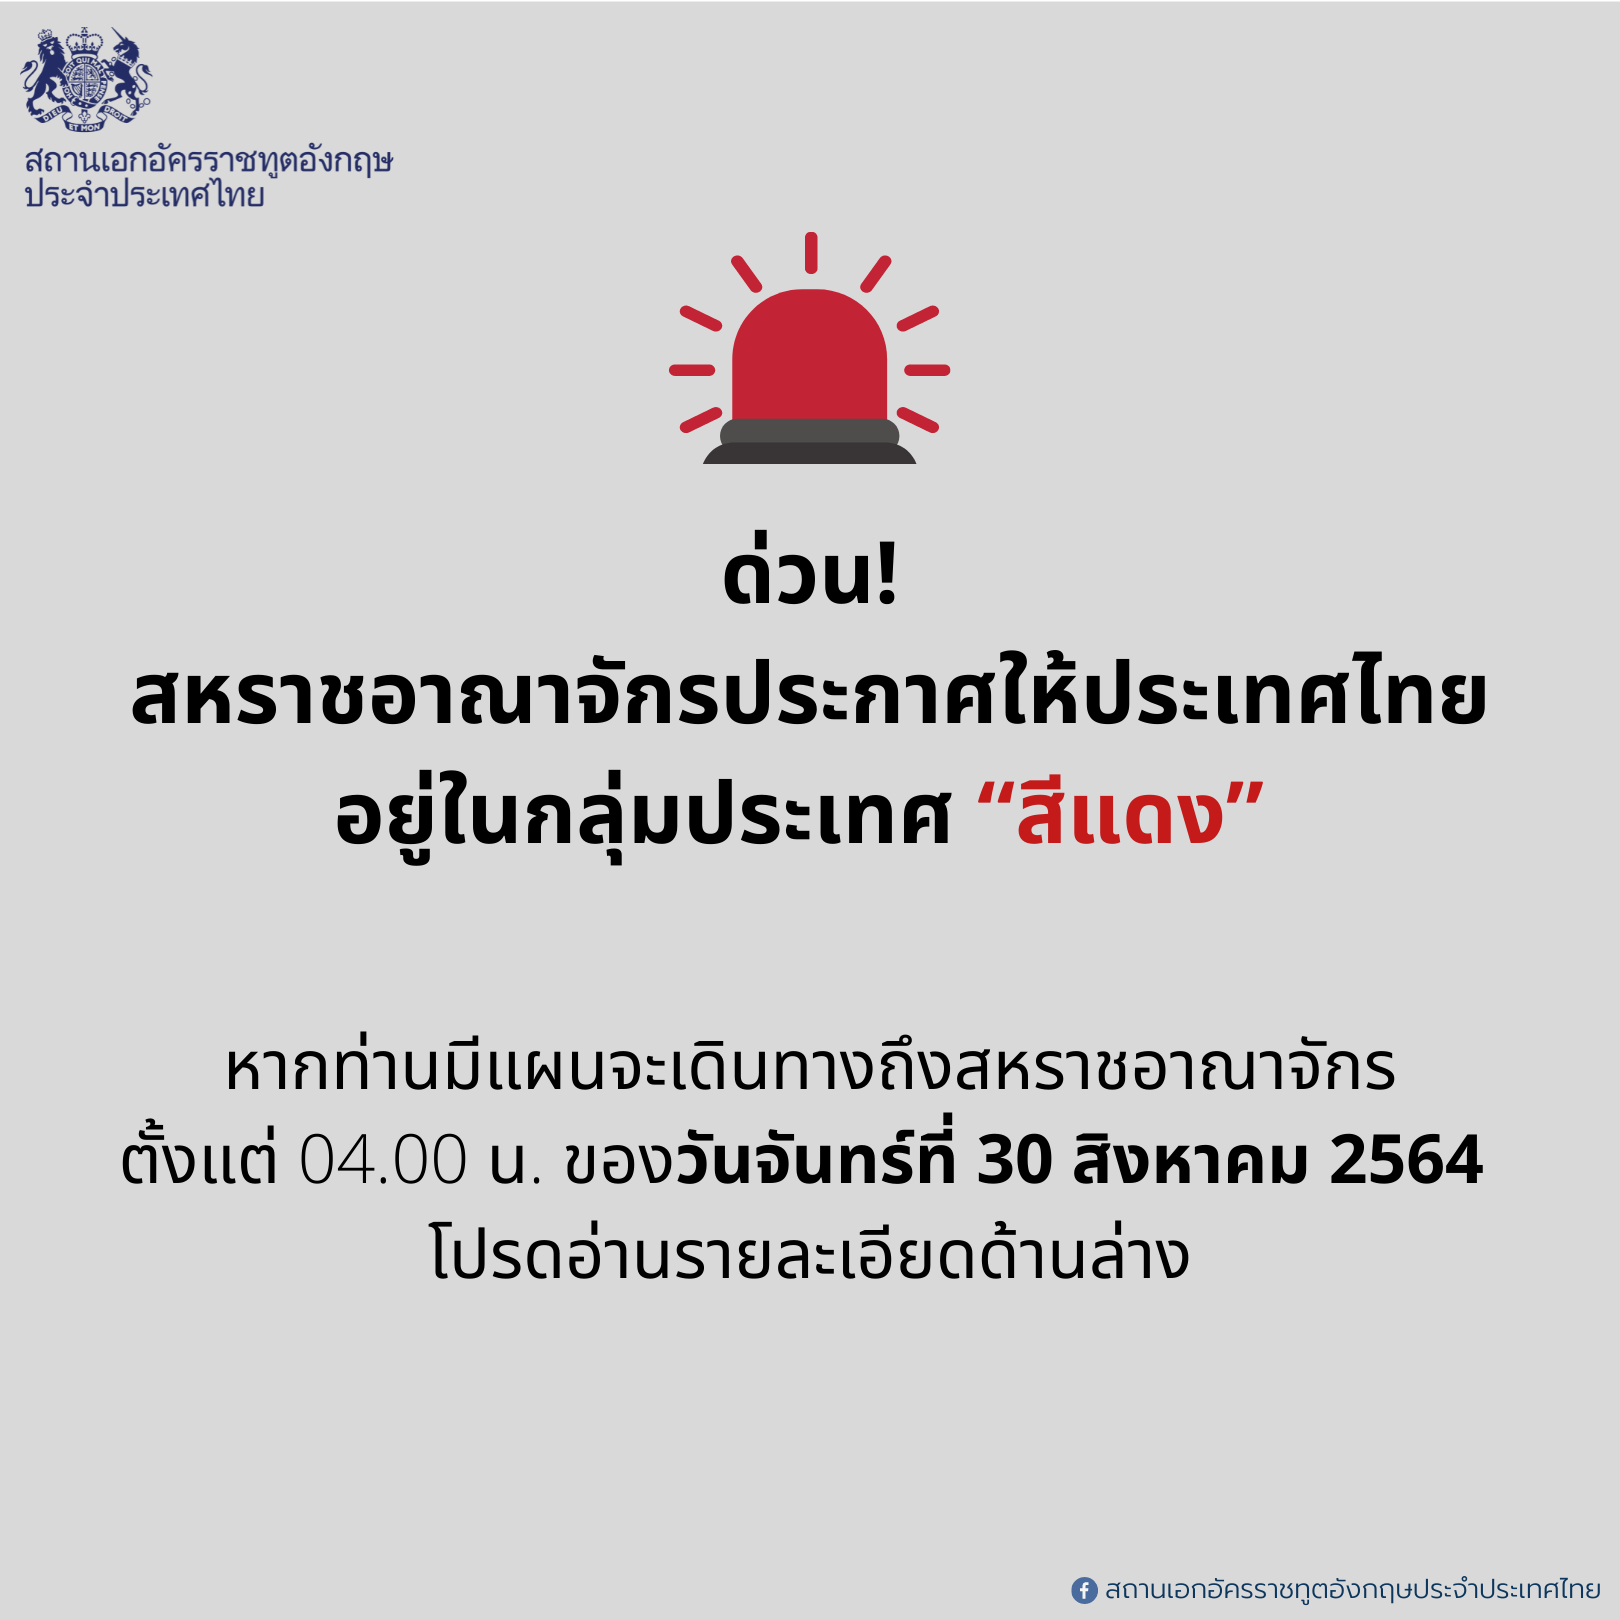 สถานเอกอัครราชทูตอังกฤษประจำประเทศไทย